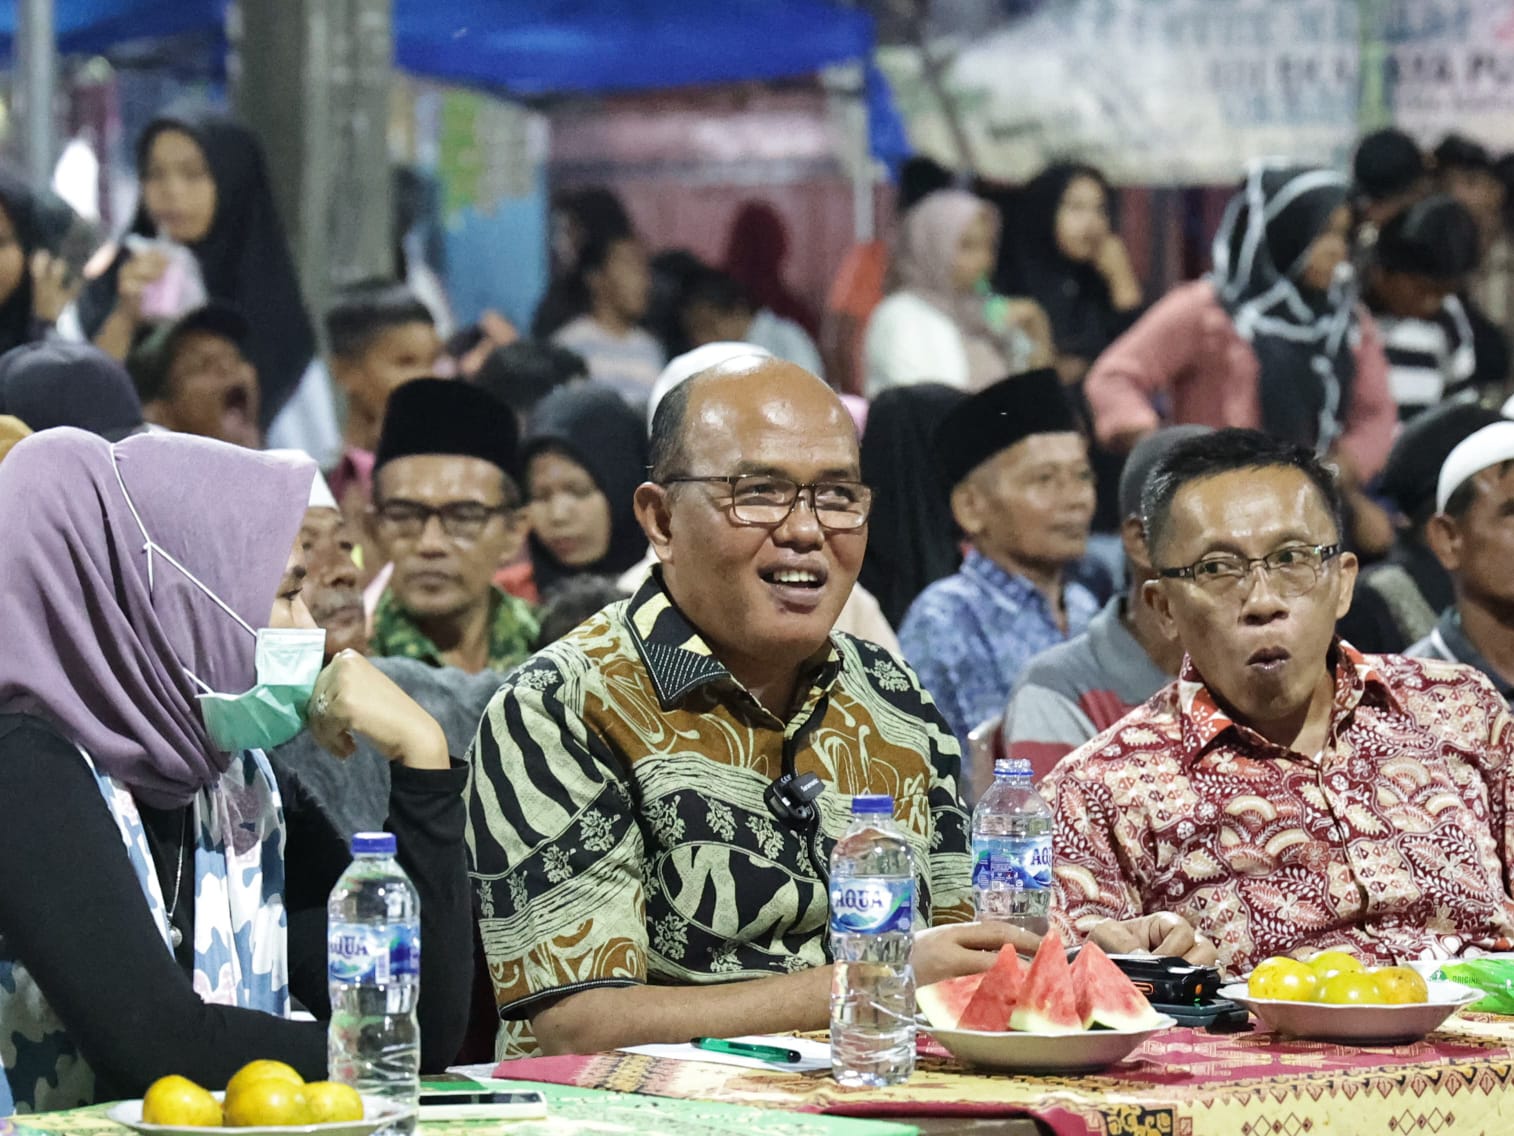 Reses Ketua DPRD Sumbar, Supardi, di Pasar Sialang Kapur IX ini diakhiri dengan hiburan musik berhadiah permainan KIM, yang dihadiri lebih kurang 500 orang. Foto Zardi.